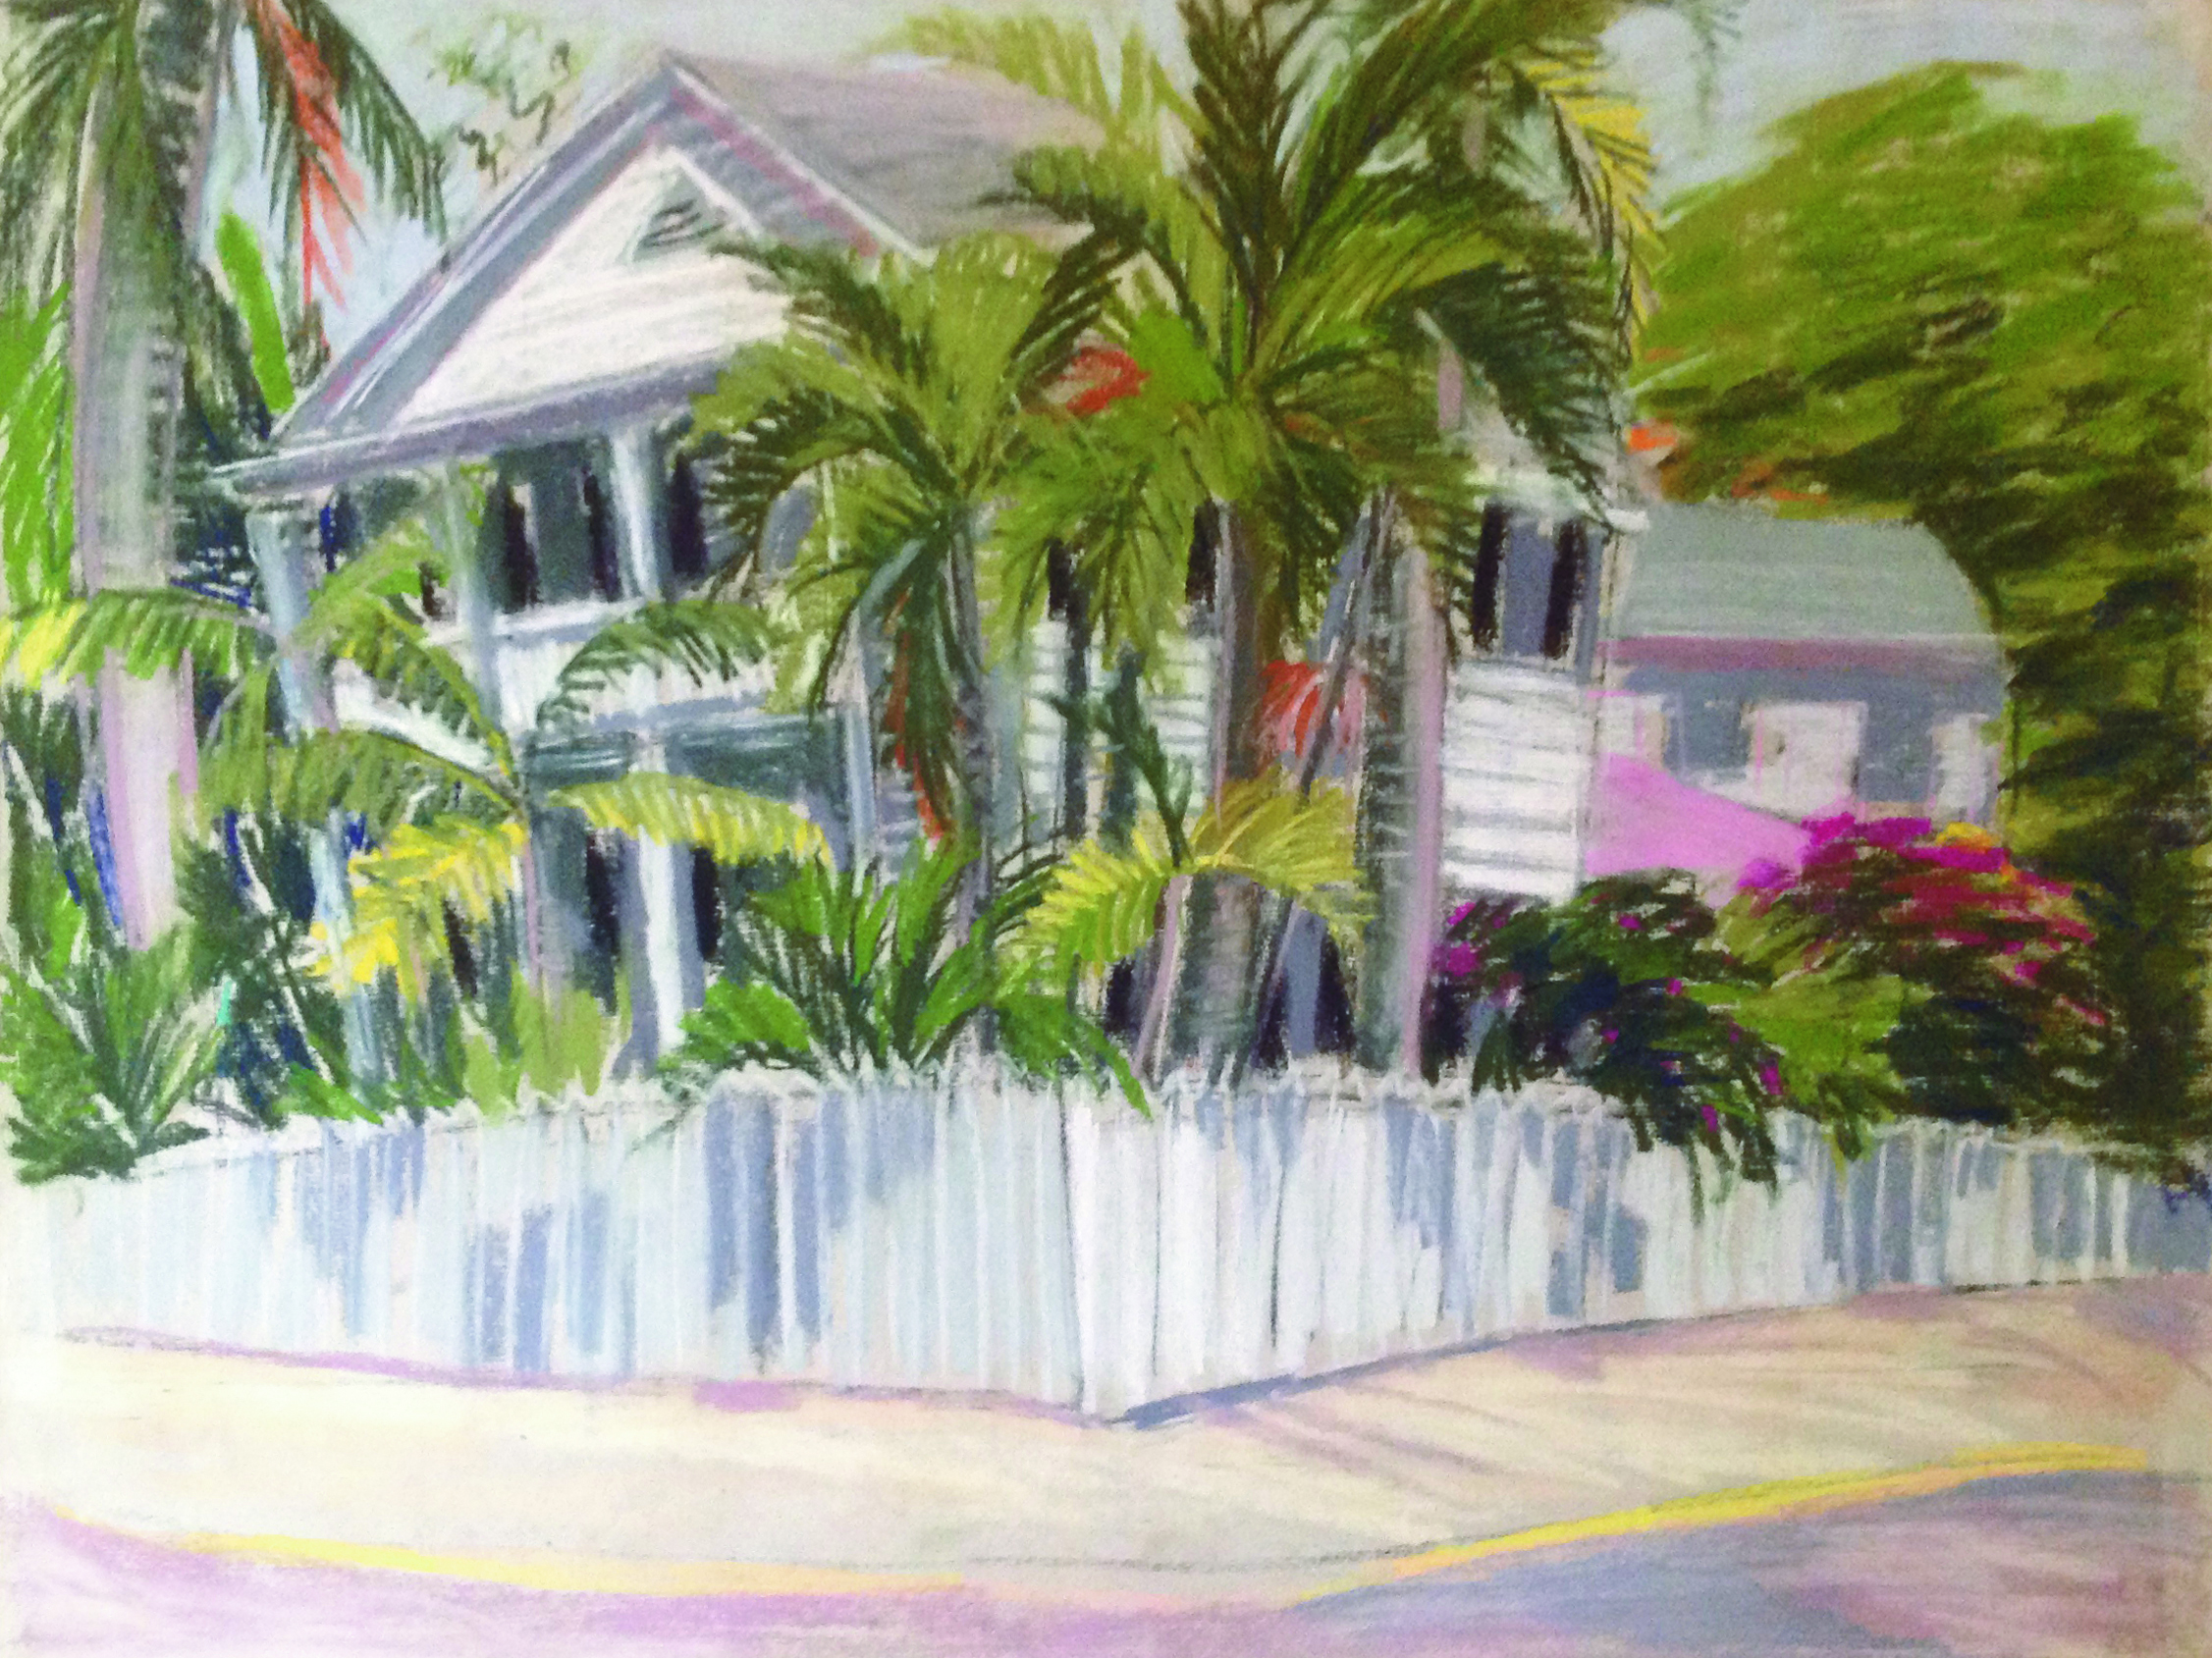 Villa in Key West, Florida(c)kheymach